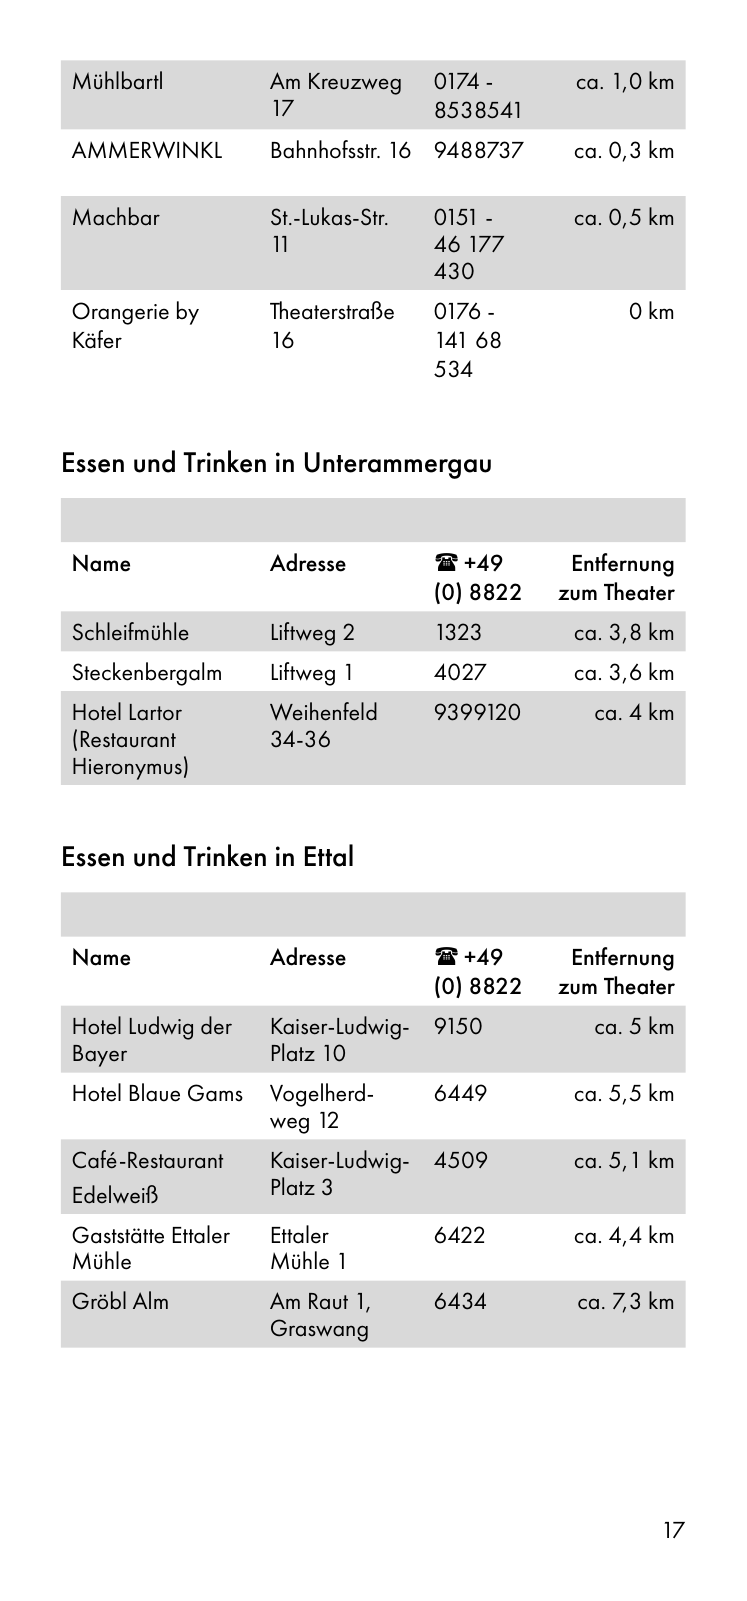 Vorschau Besucherinformation - Ticket only 24.08. Seite 17